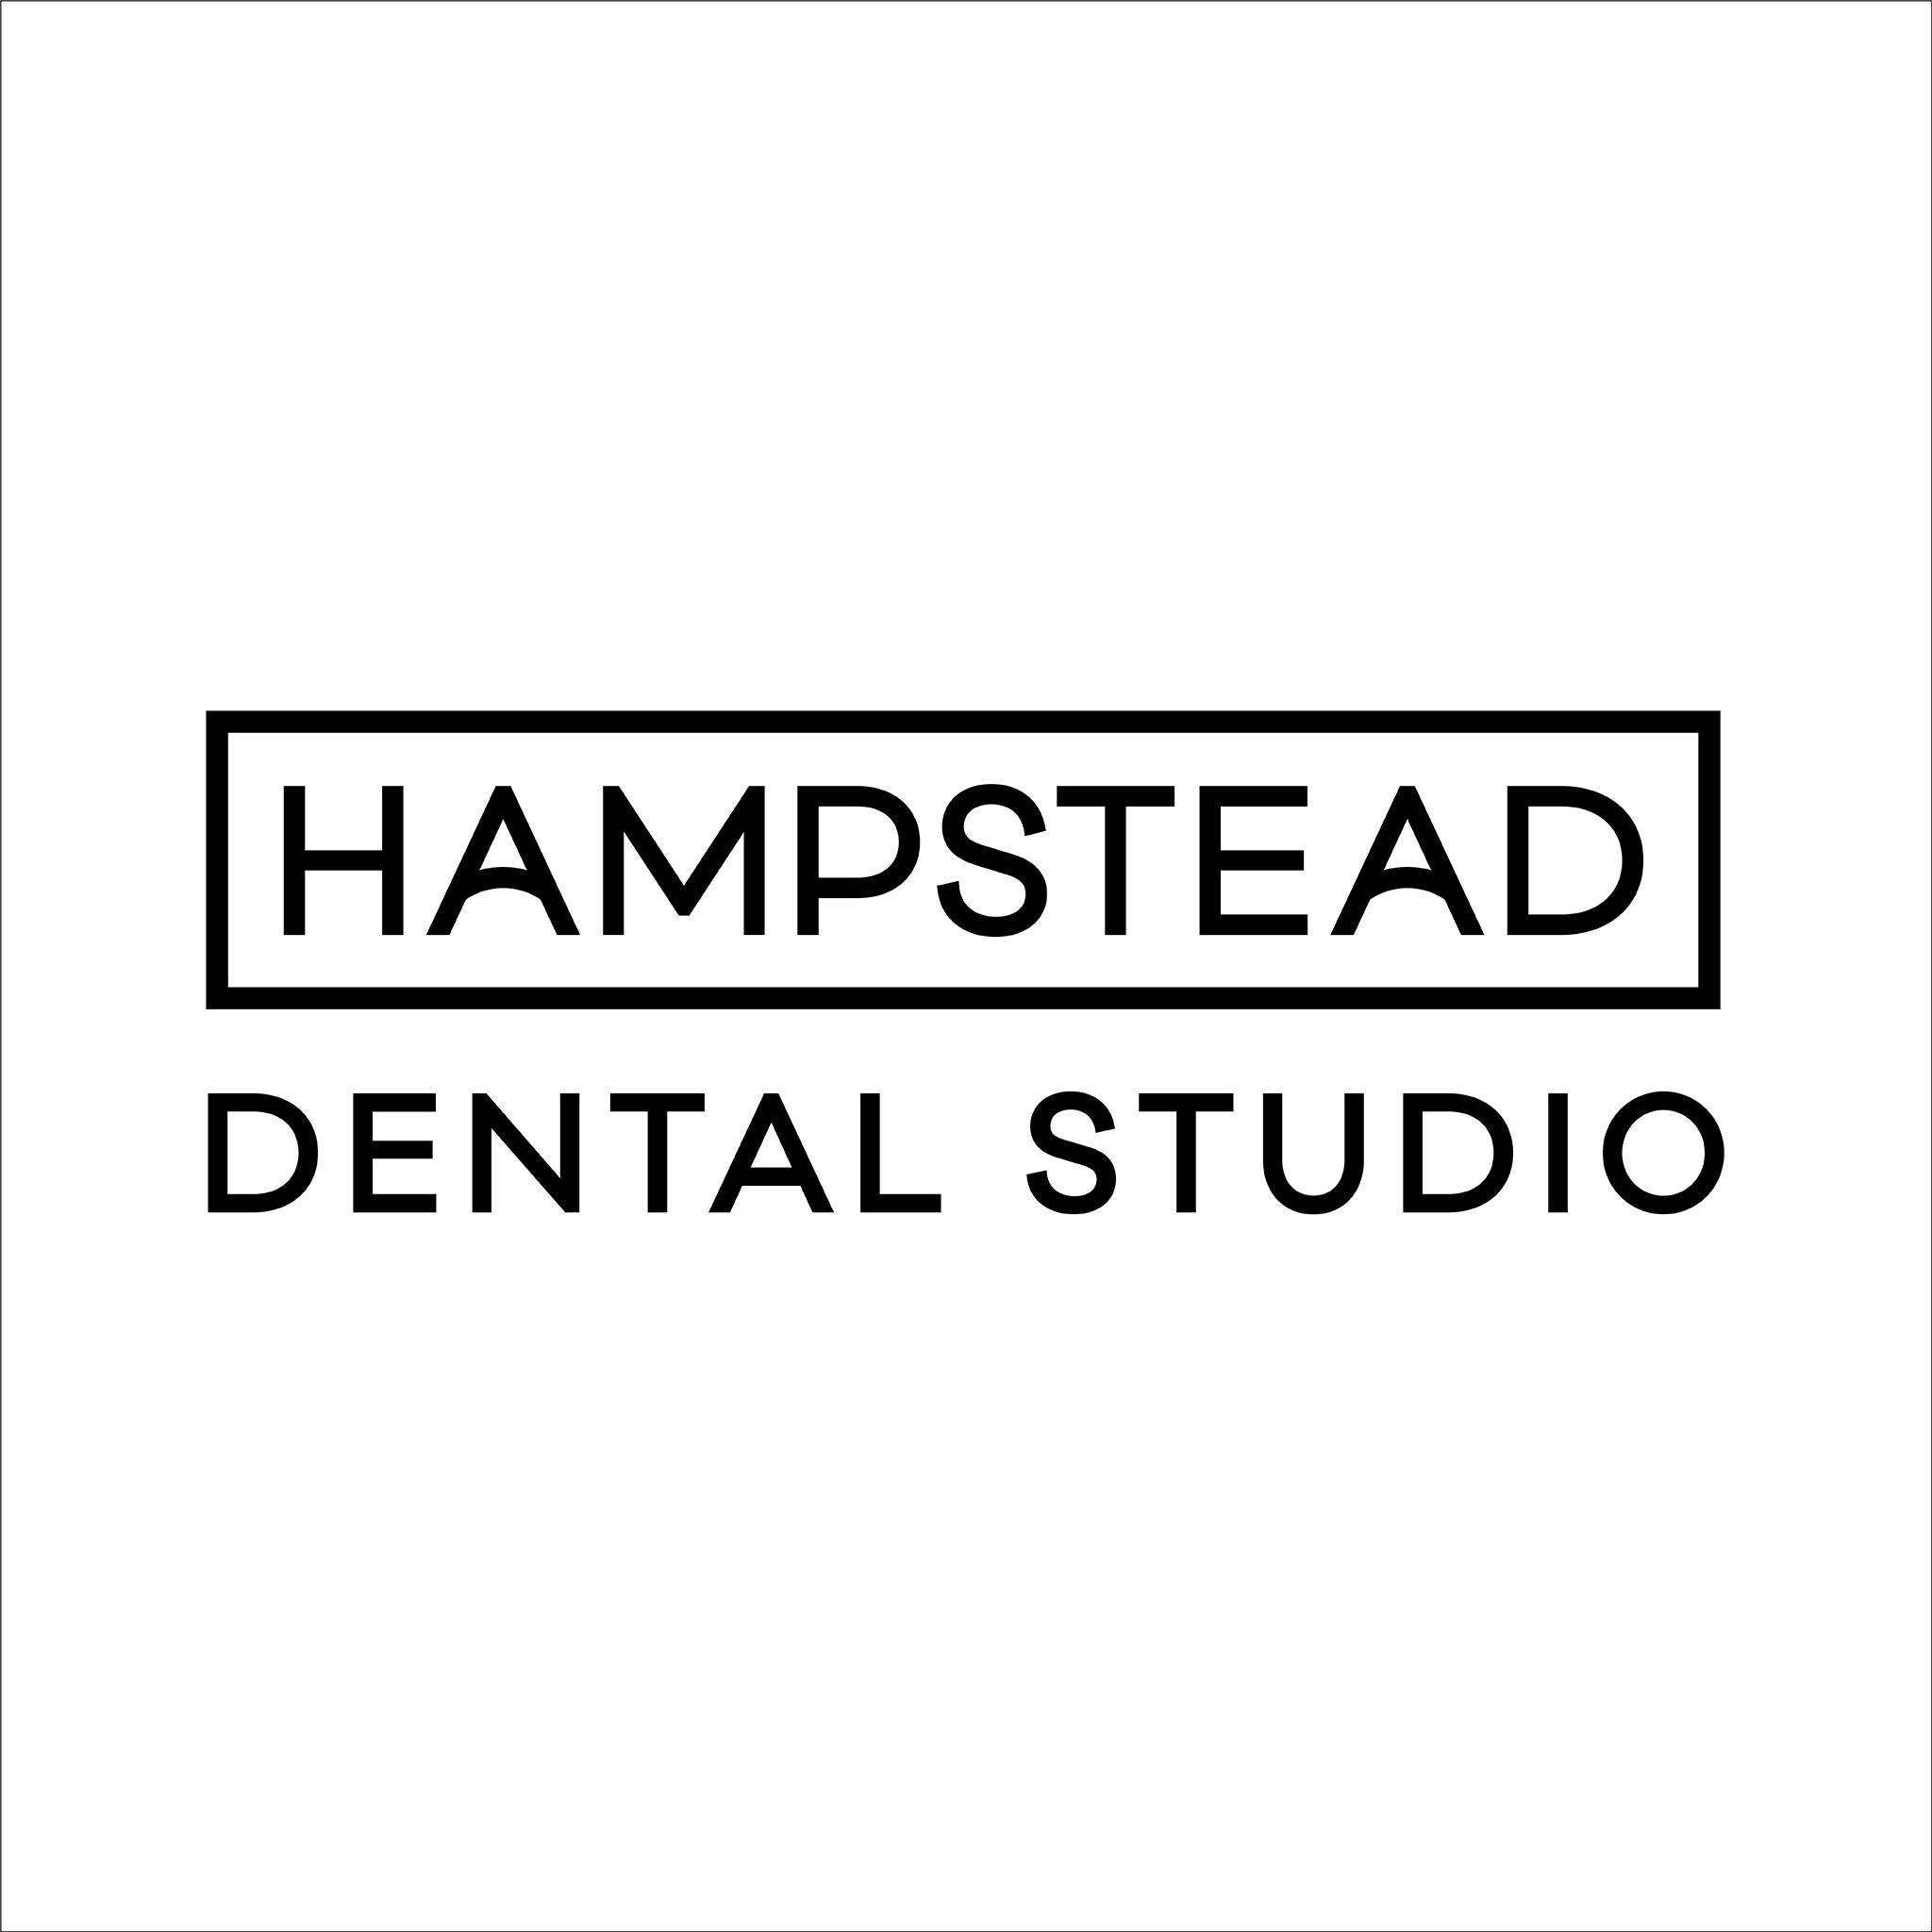 Hampstead Dental Studio